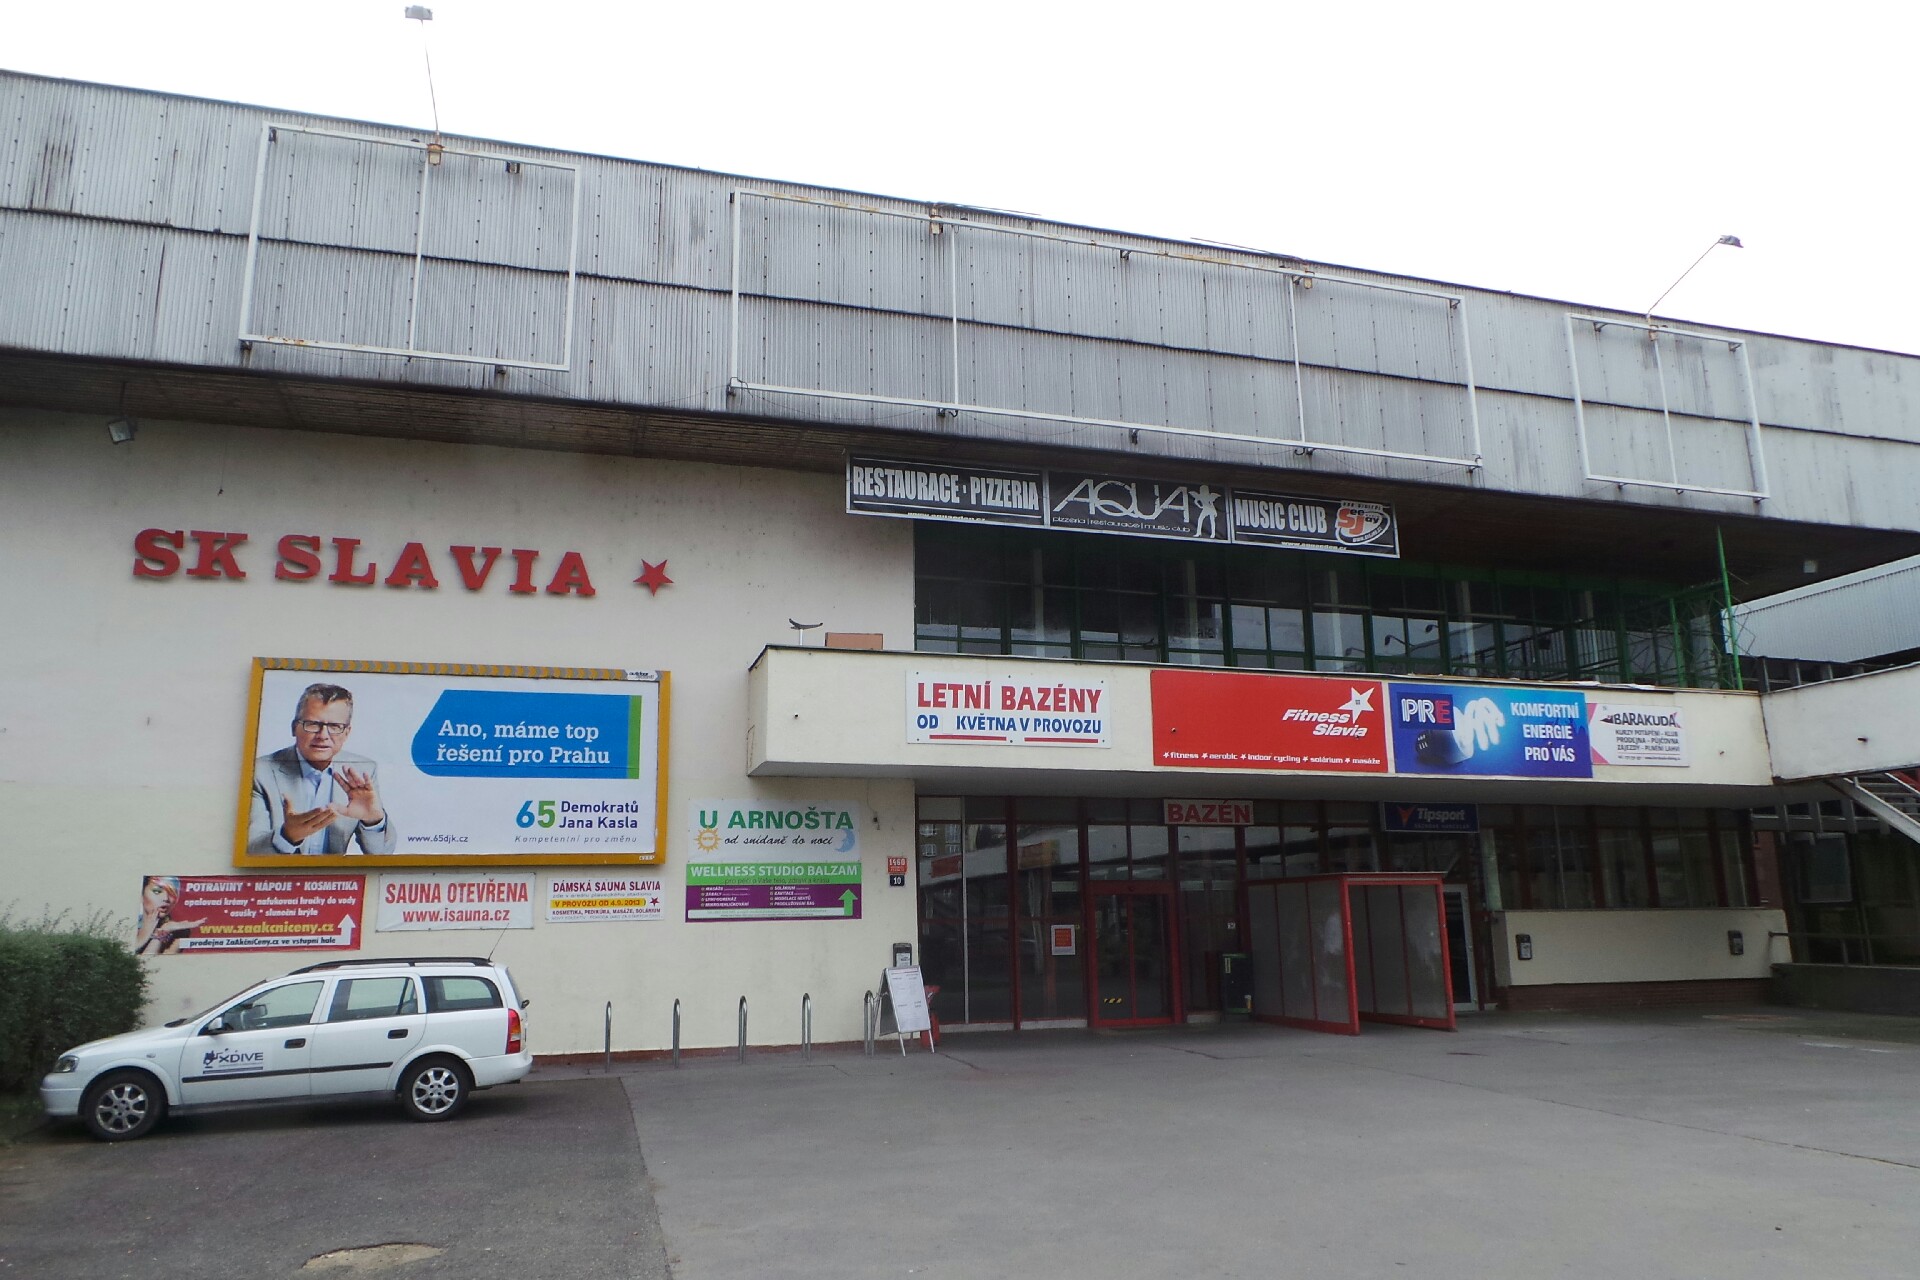 SK Slavia Praha - Chess Club 